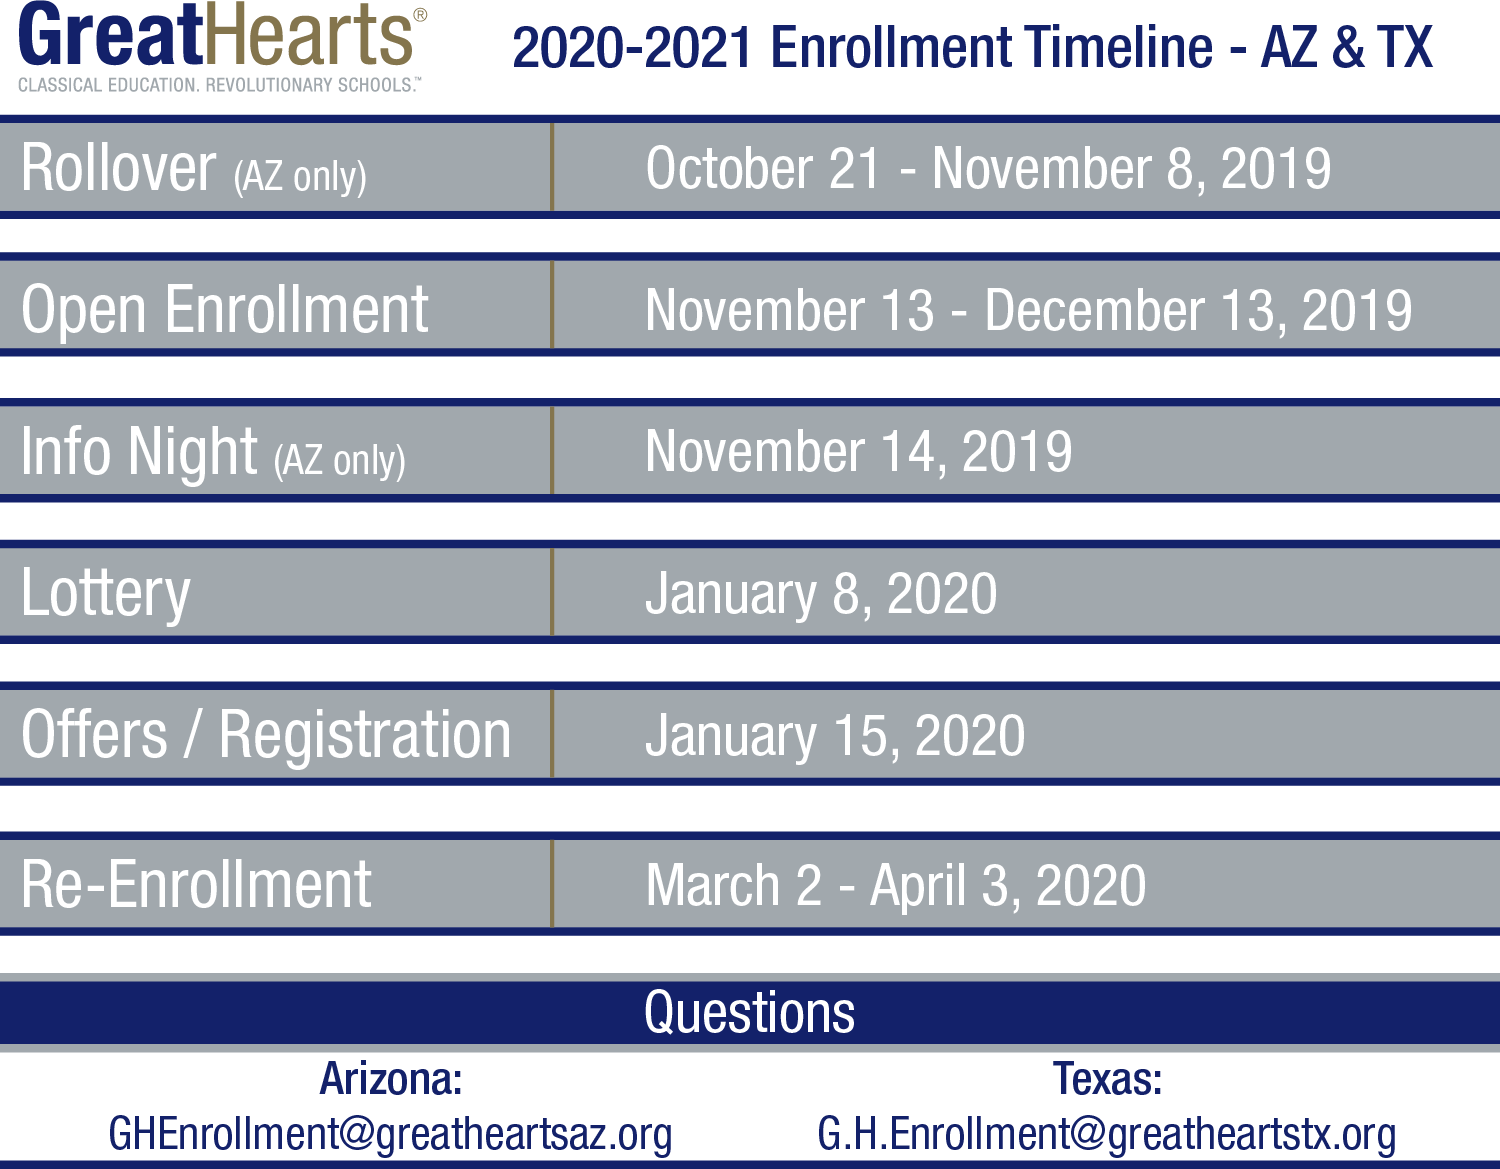 Enrollment timeline for 2020-2021